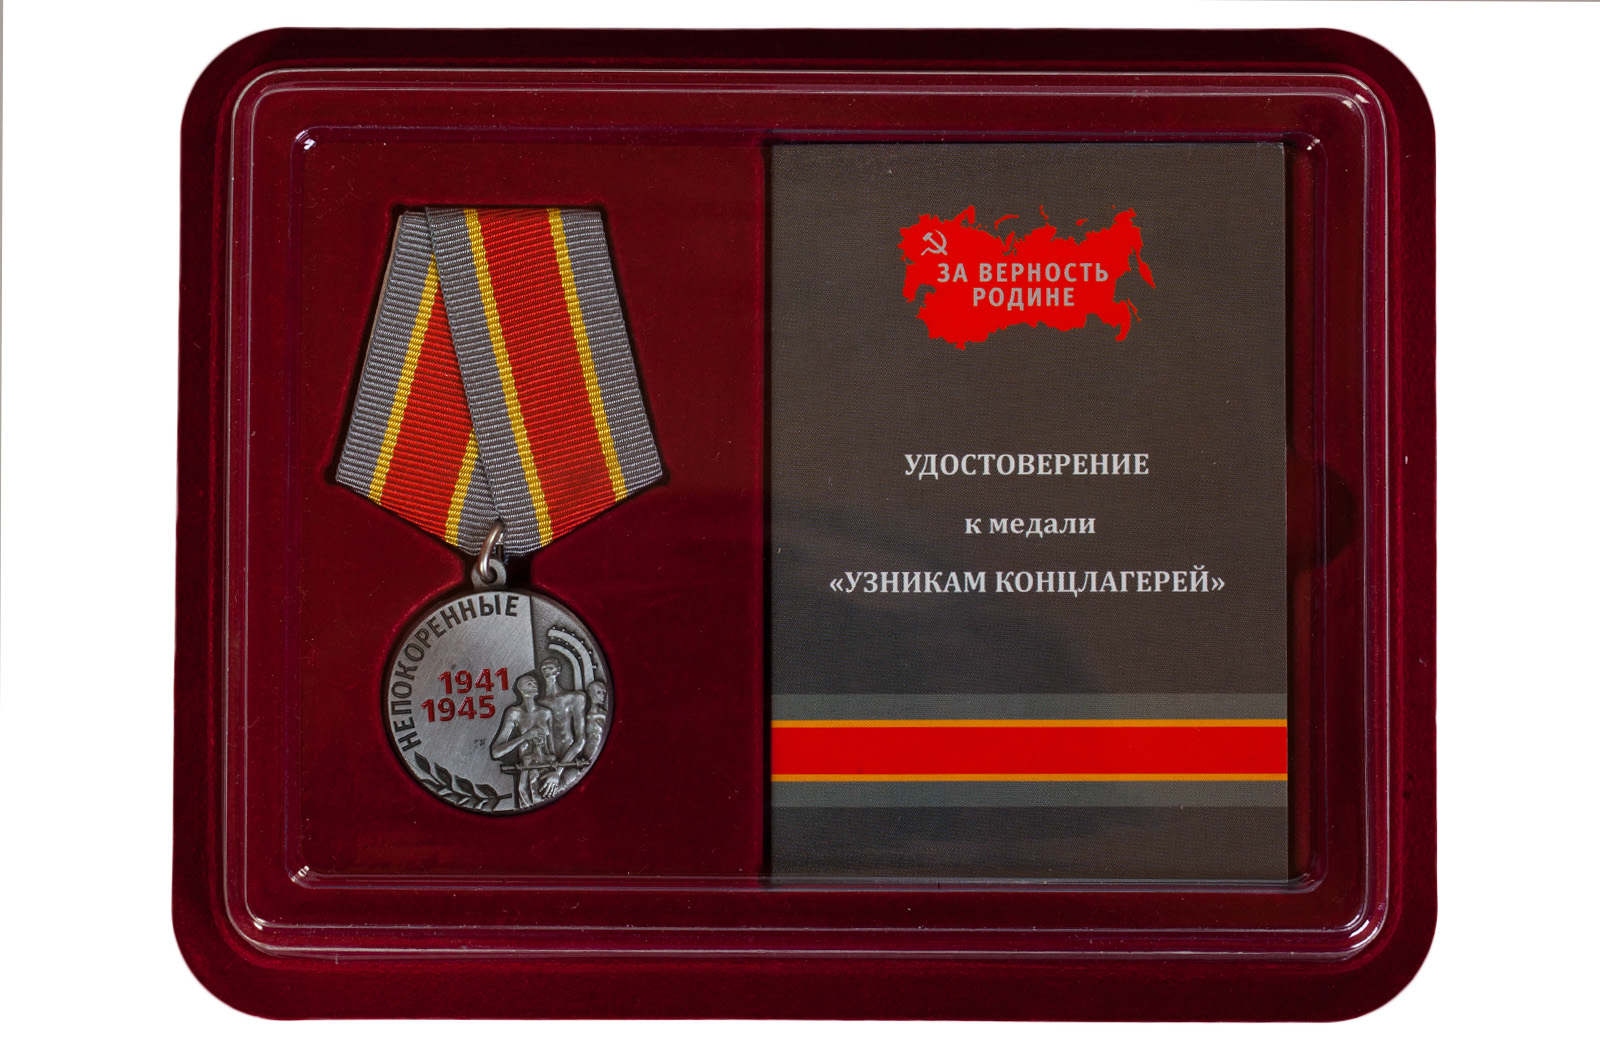 Купить памятную медаль Узникам концлагерей на 75 лет Победы оптом